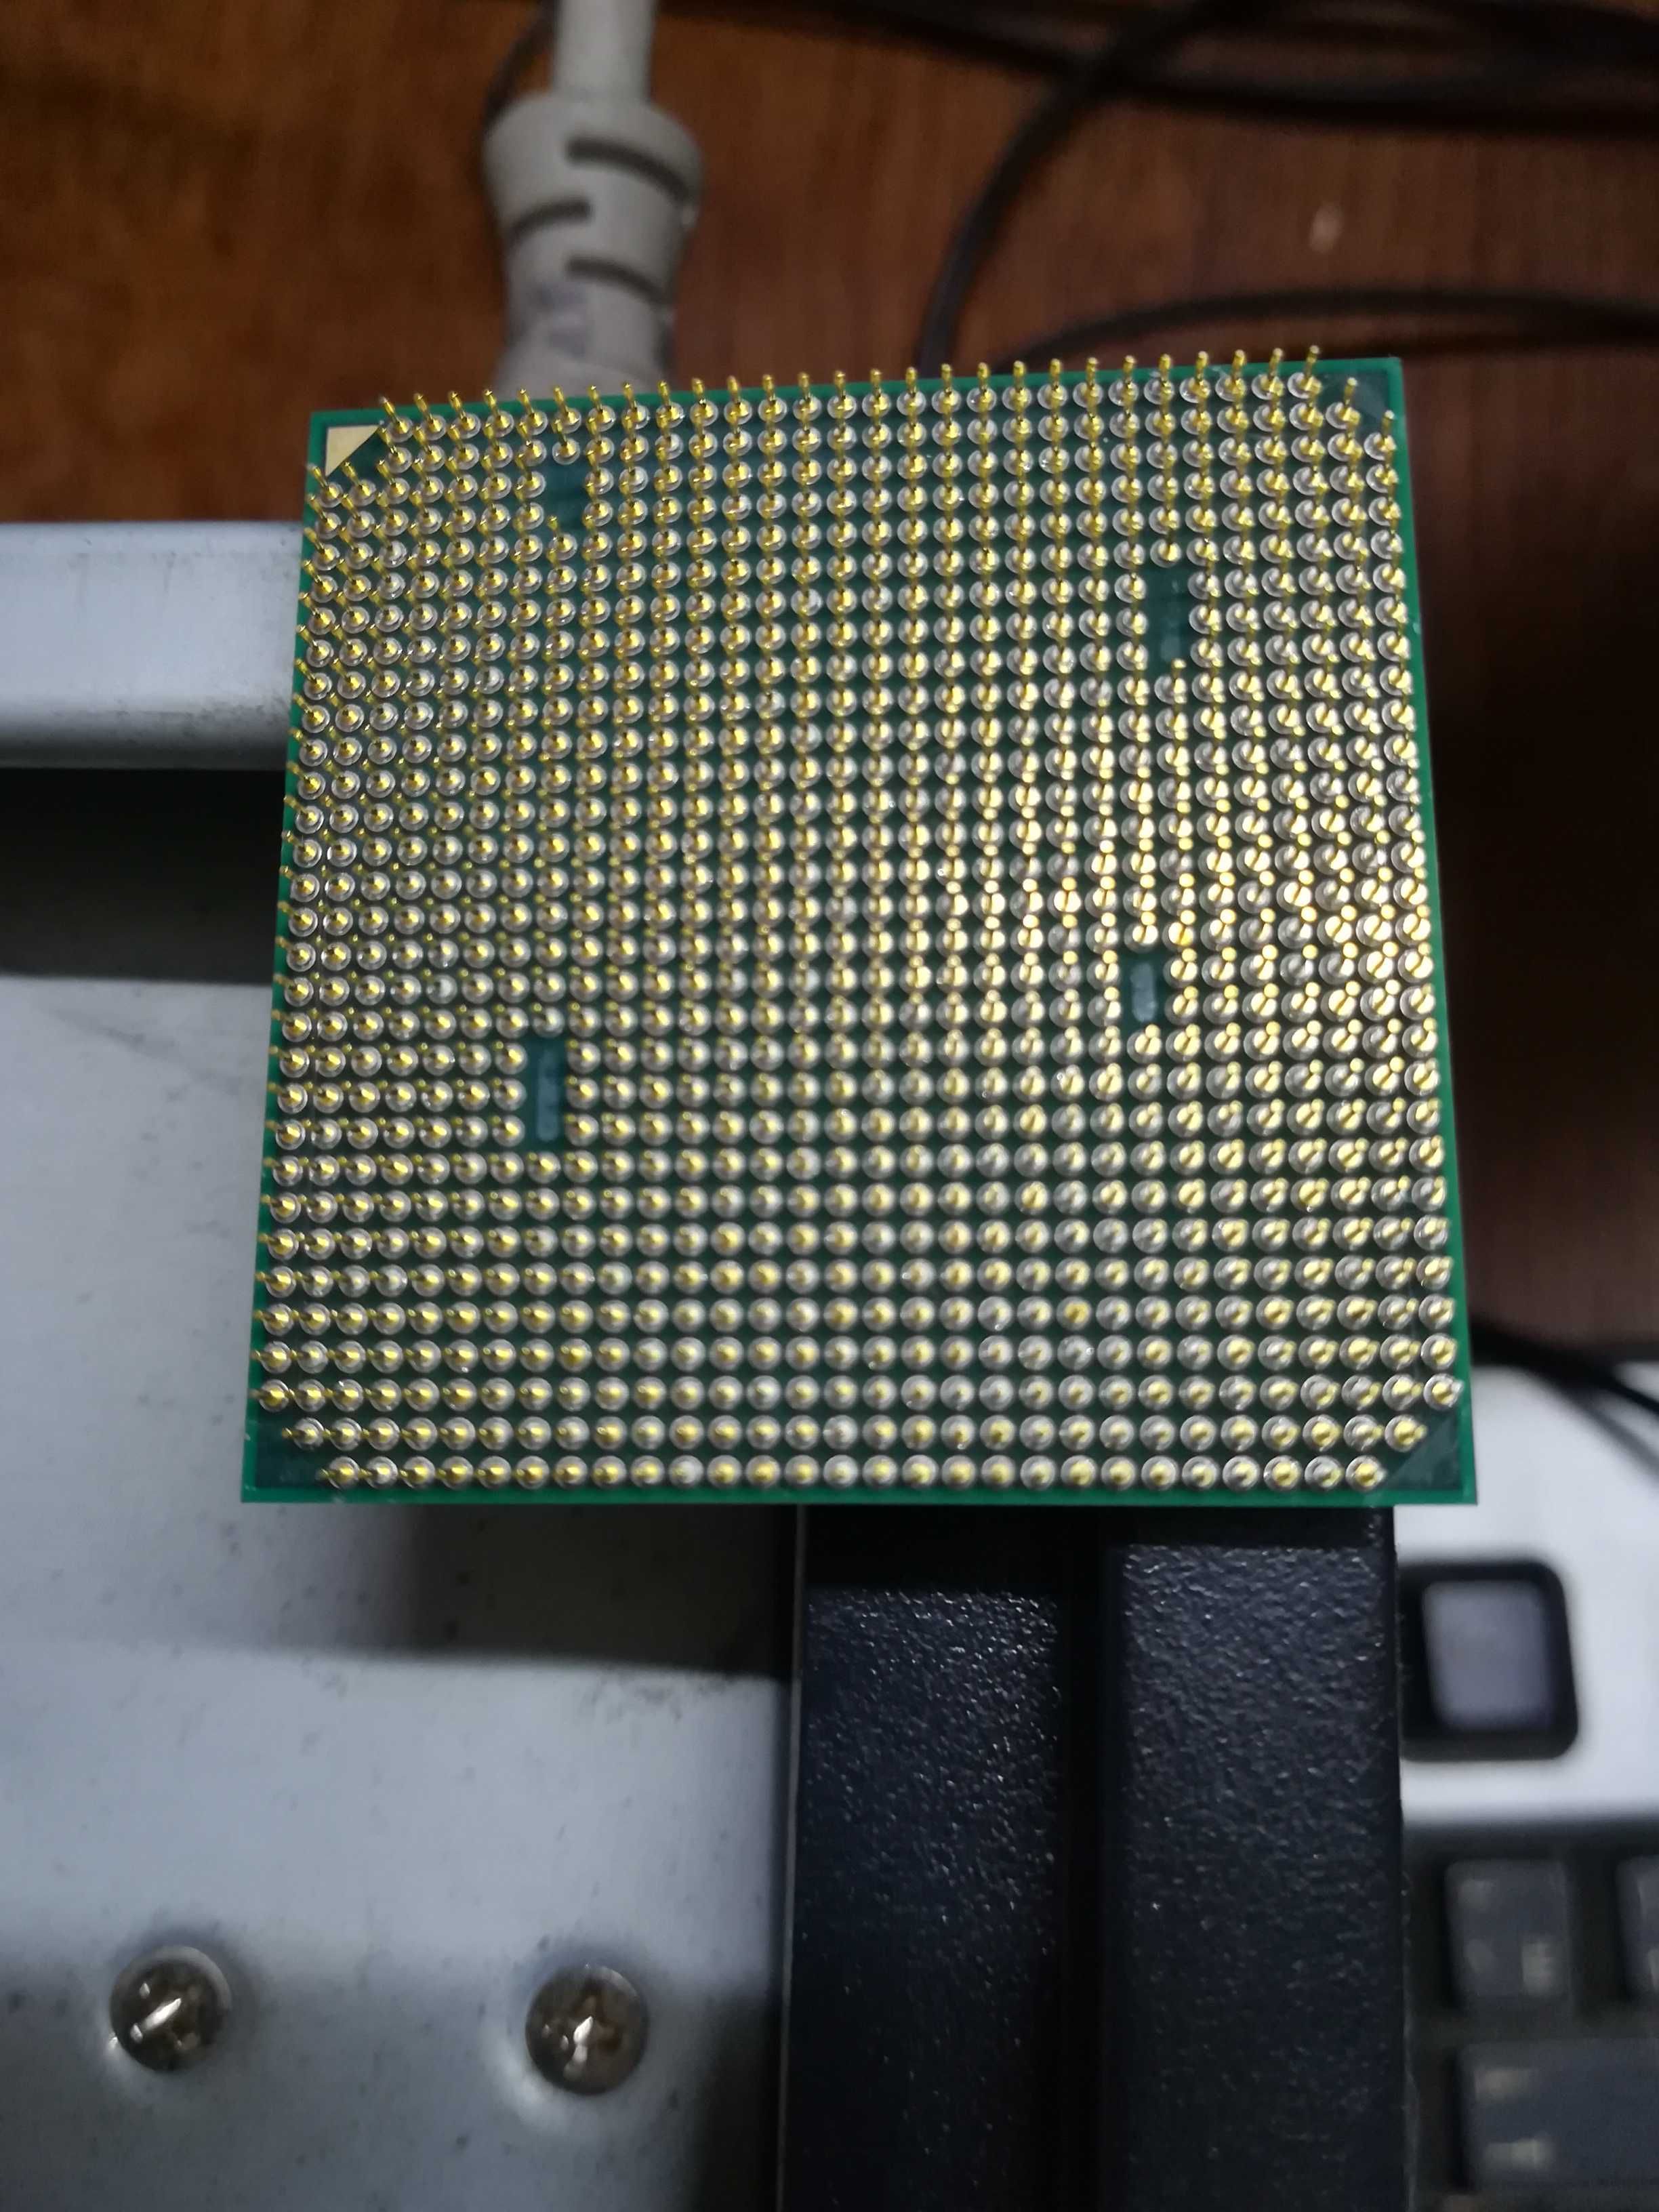 Процессор AMD Athlon II X2 240 (ADX2400CK23GQ)AMD AM3 AM2+ для пк б.у.